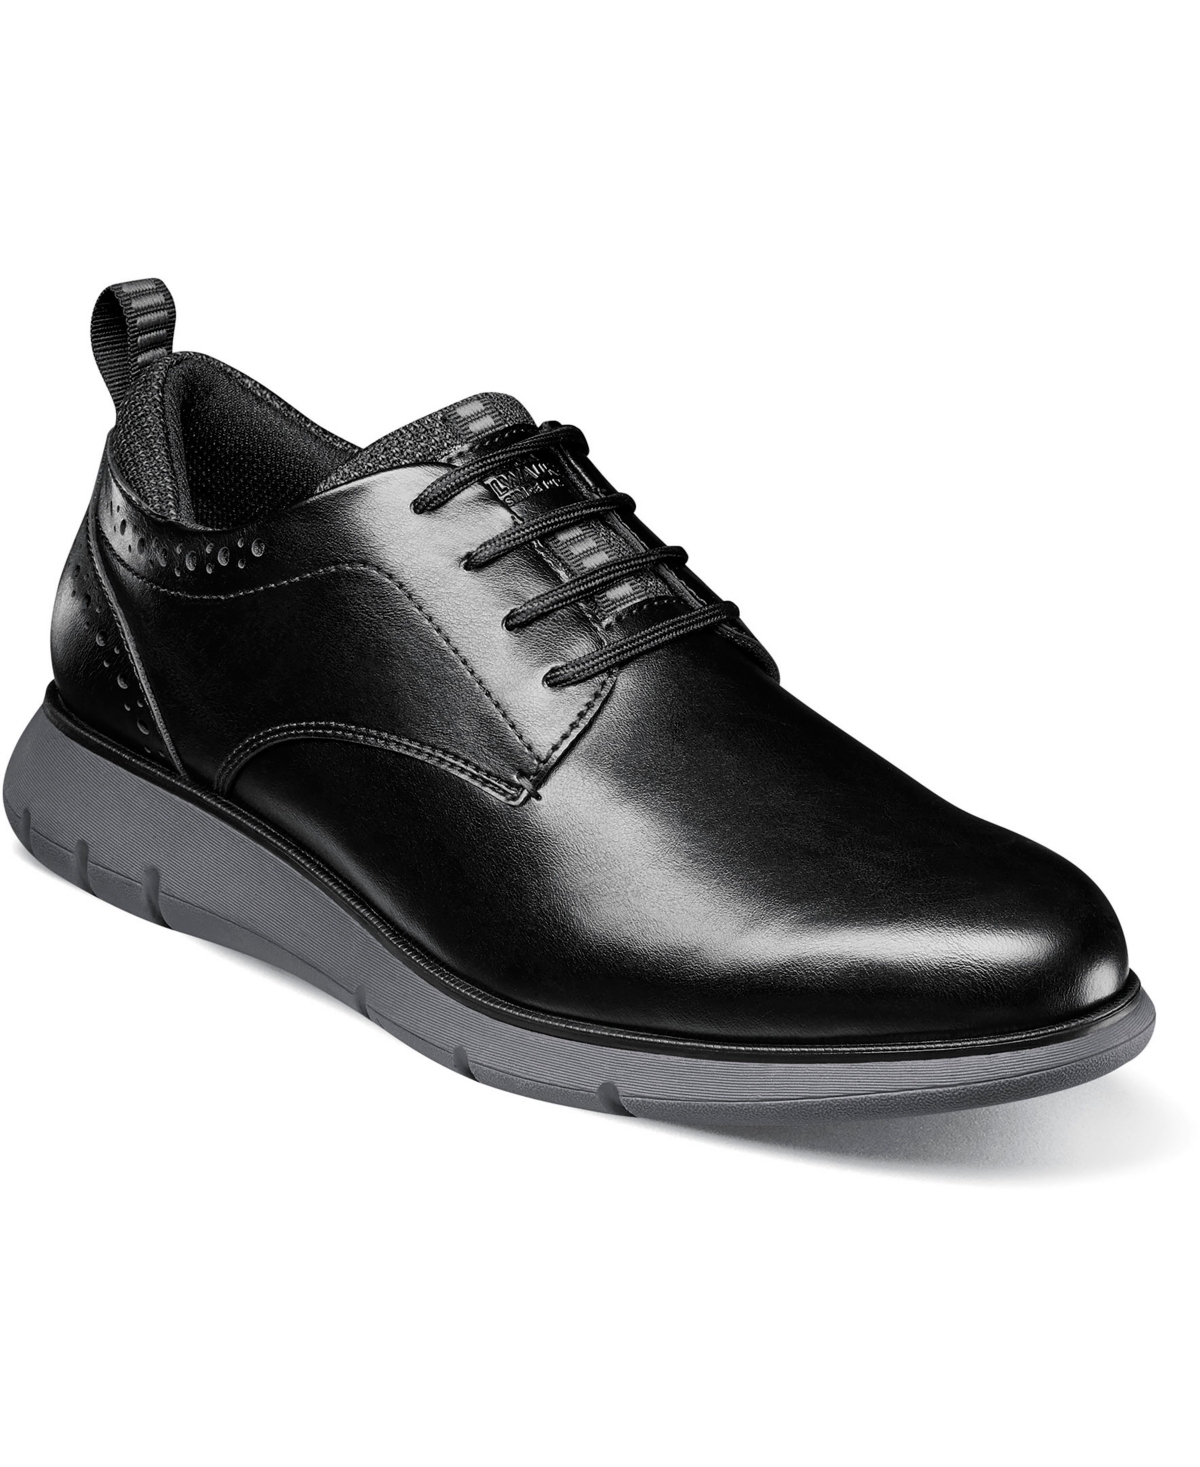 Men's Stance Plain Toe Oxford Shoes - Cognac